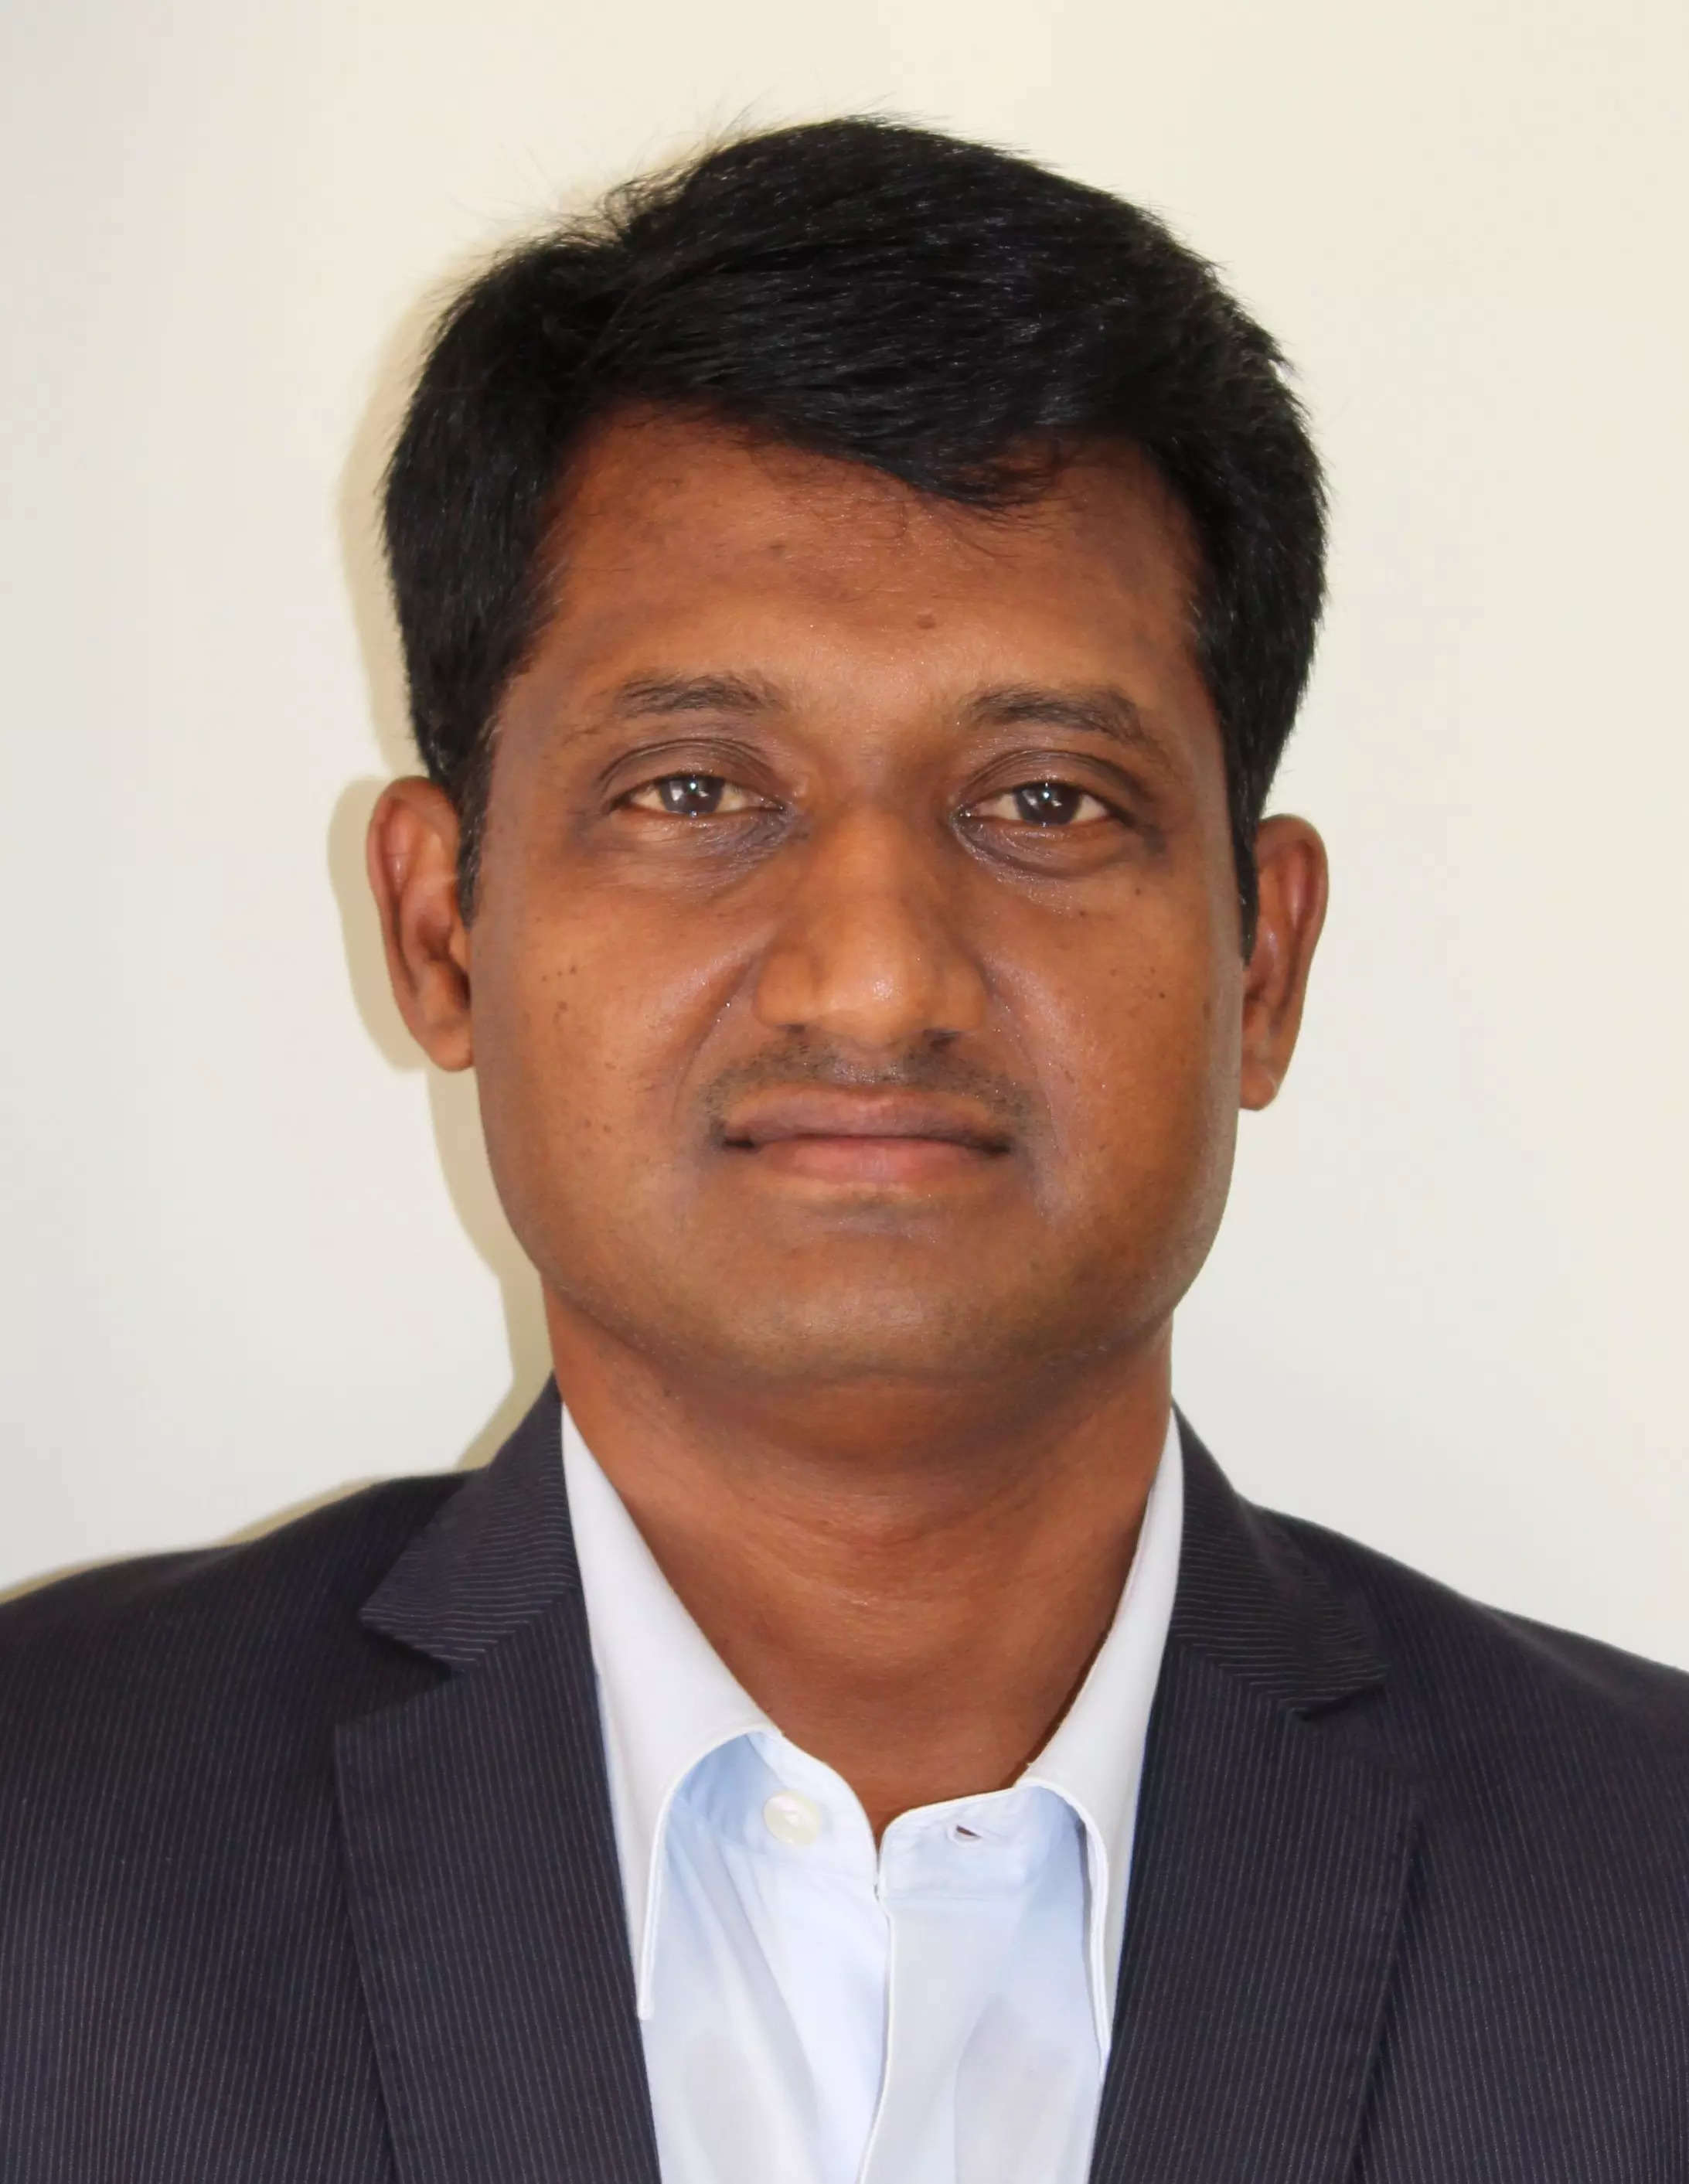  Jegapriyan Govindarajan, Managing Director and General Manager – Garrett Motion Technologies India